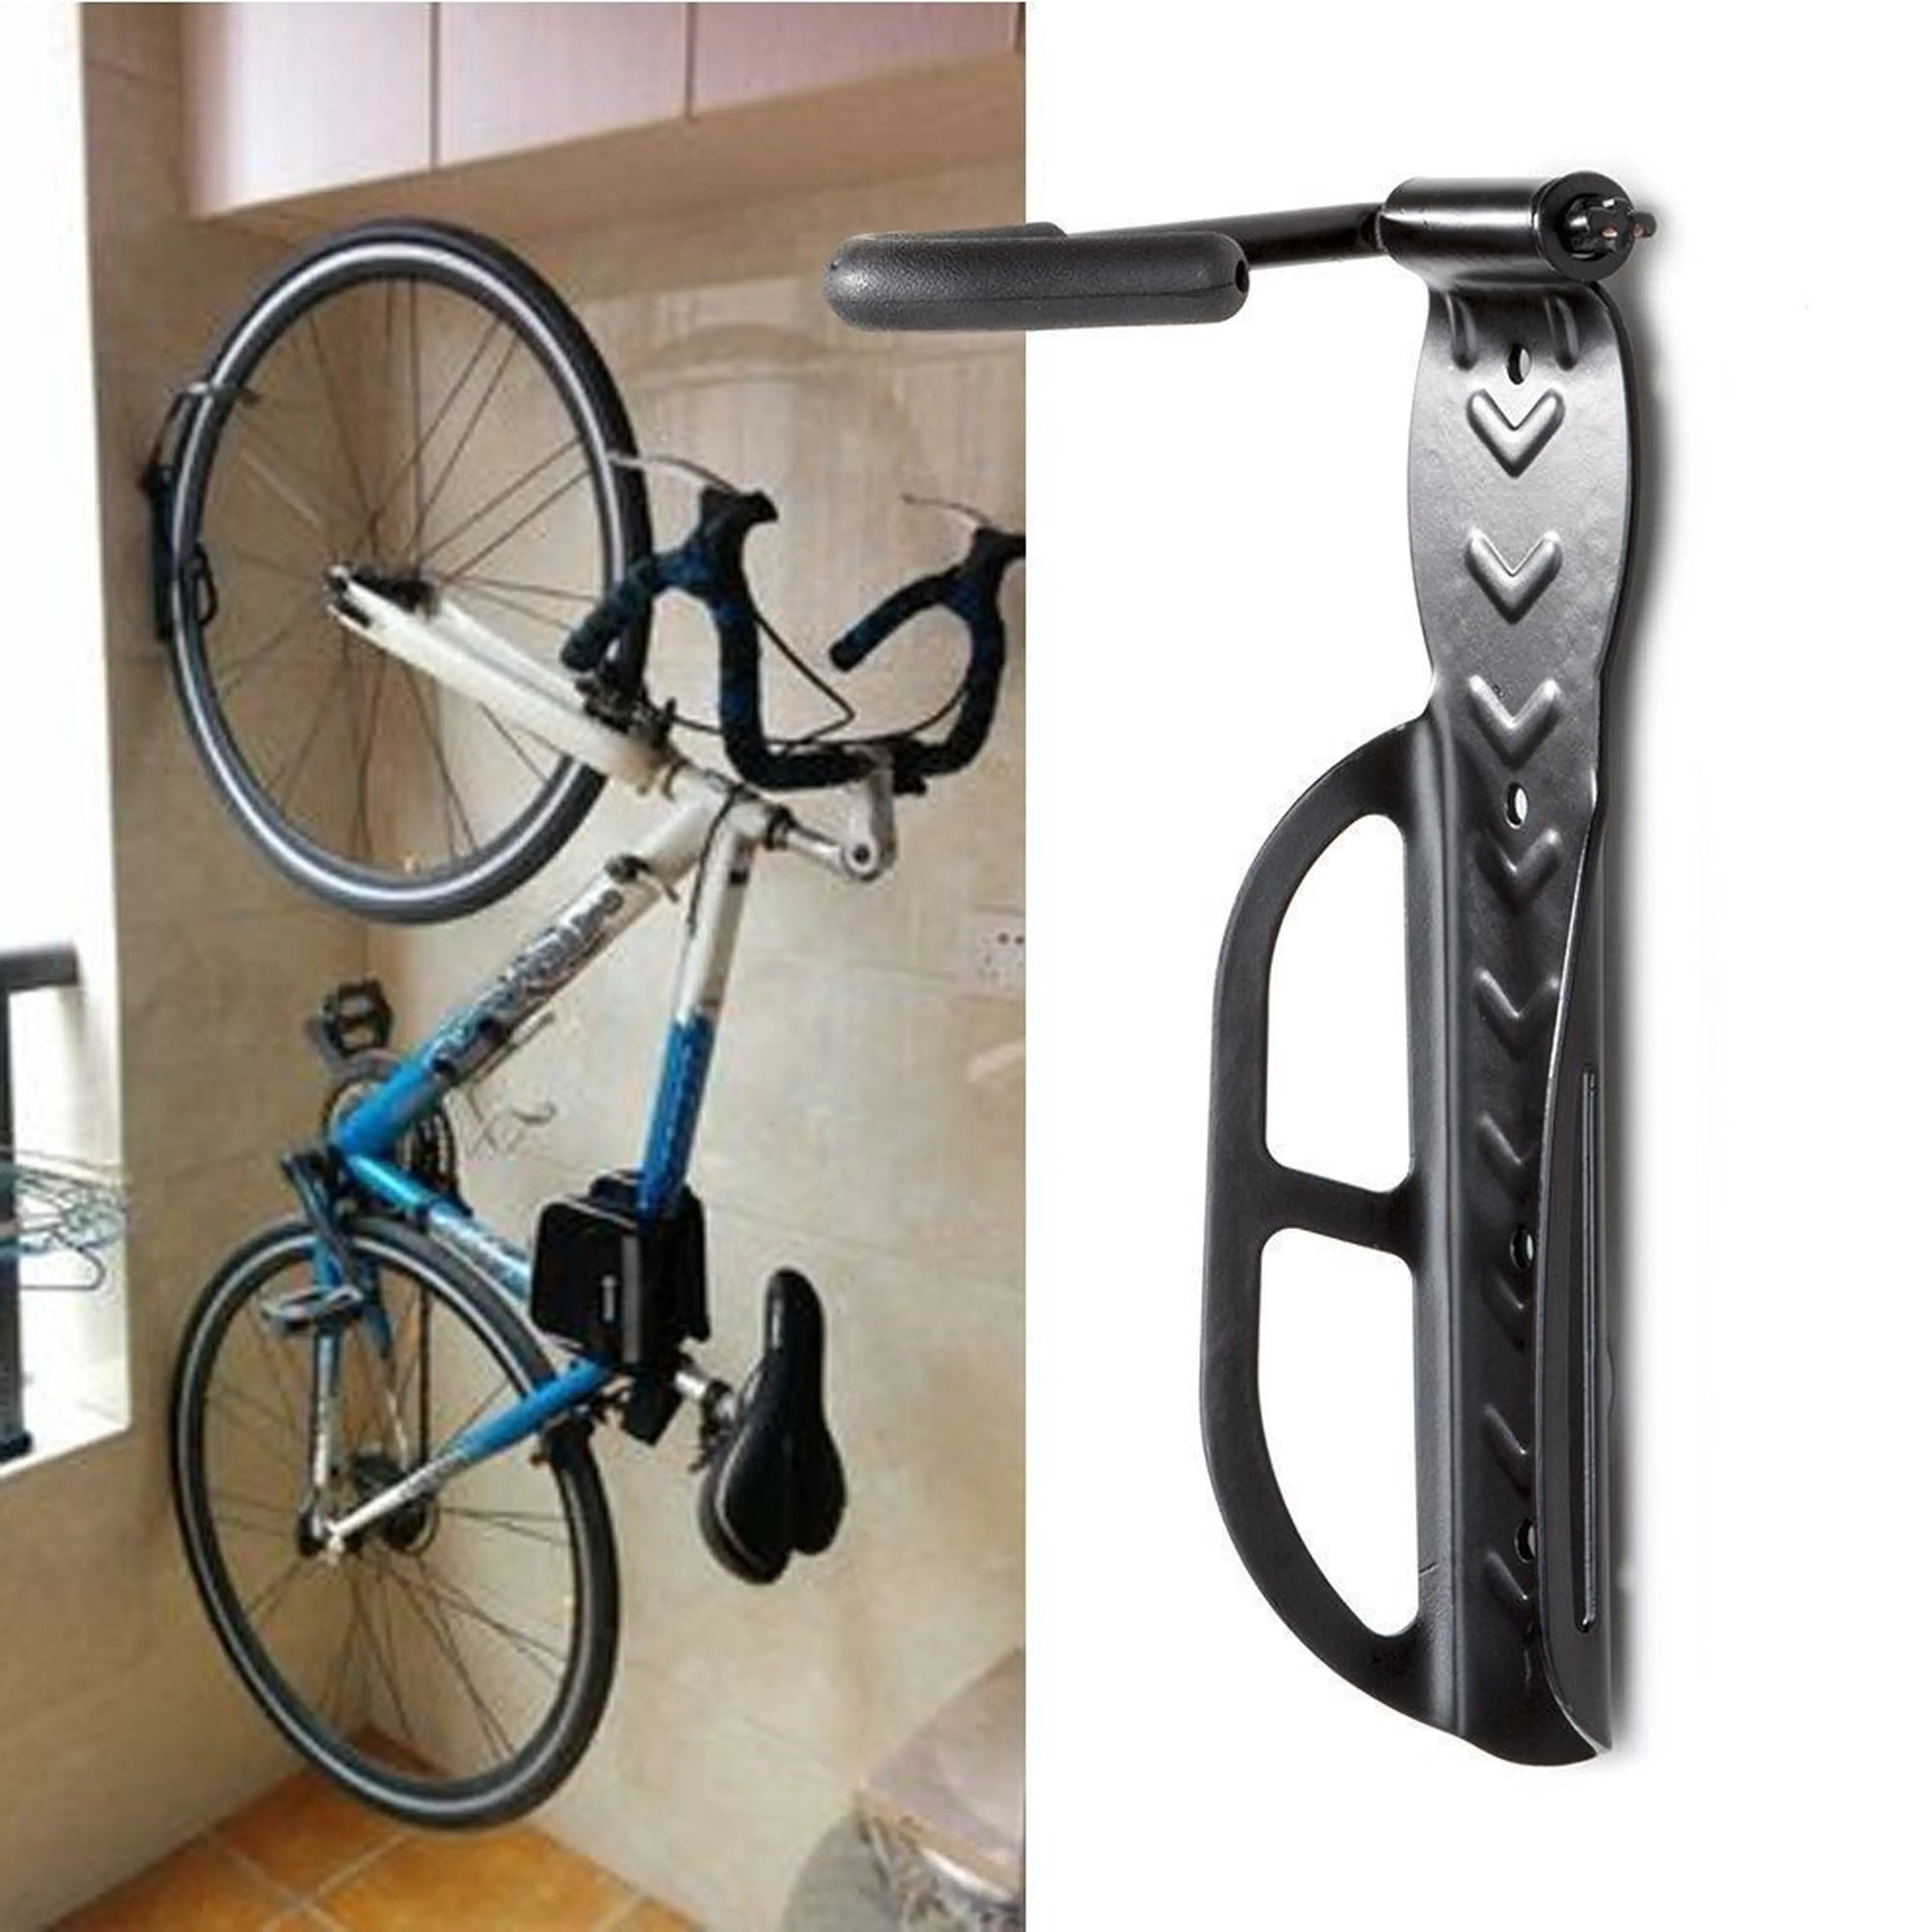 3. Suport pentru biciclete montaj pe perete suporta pana la 30kg